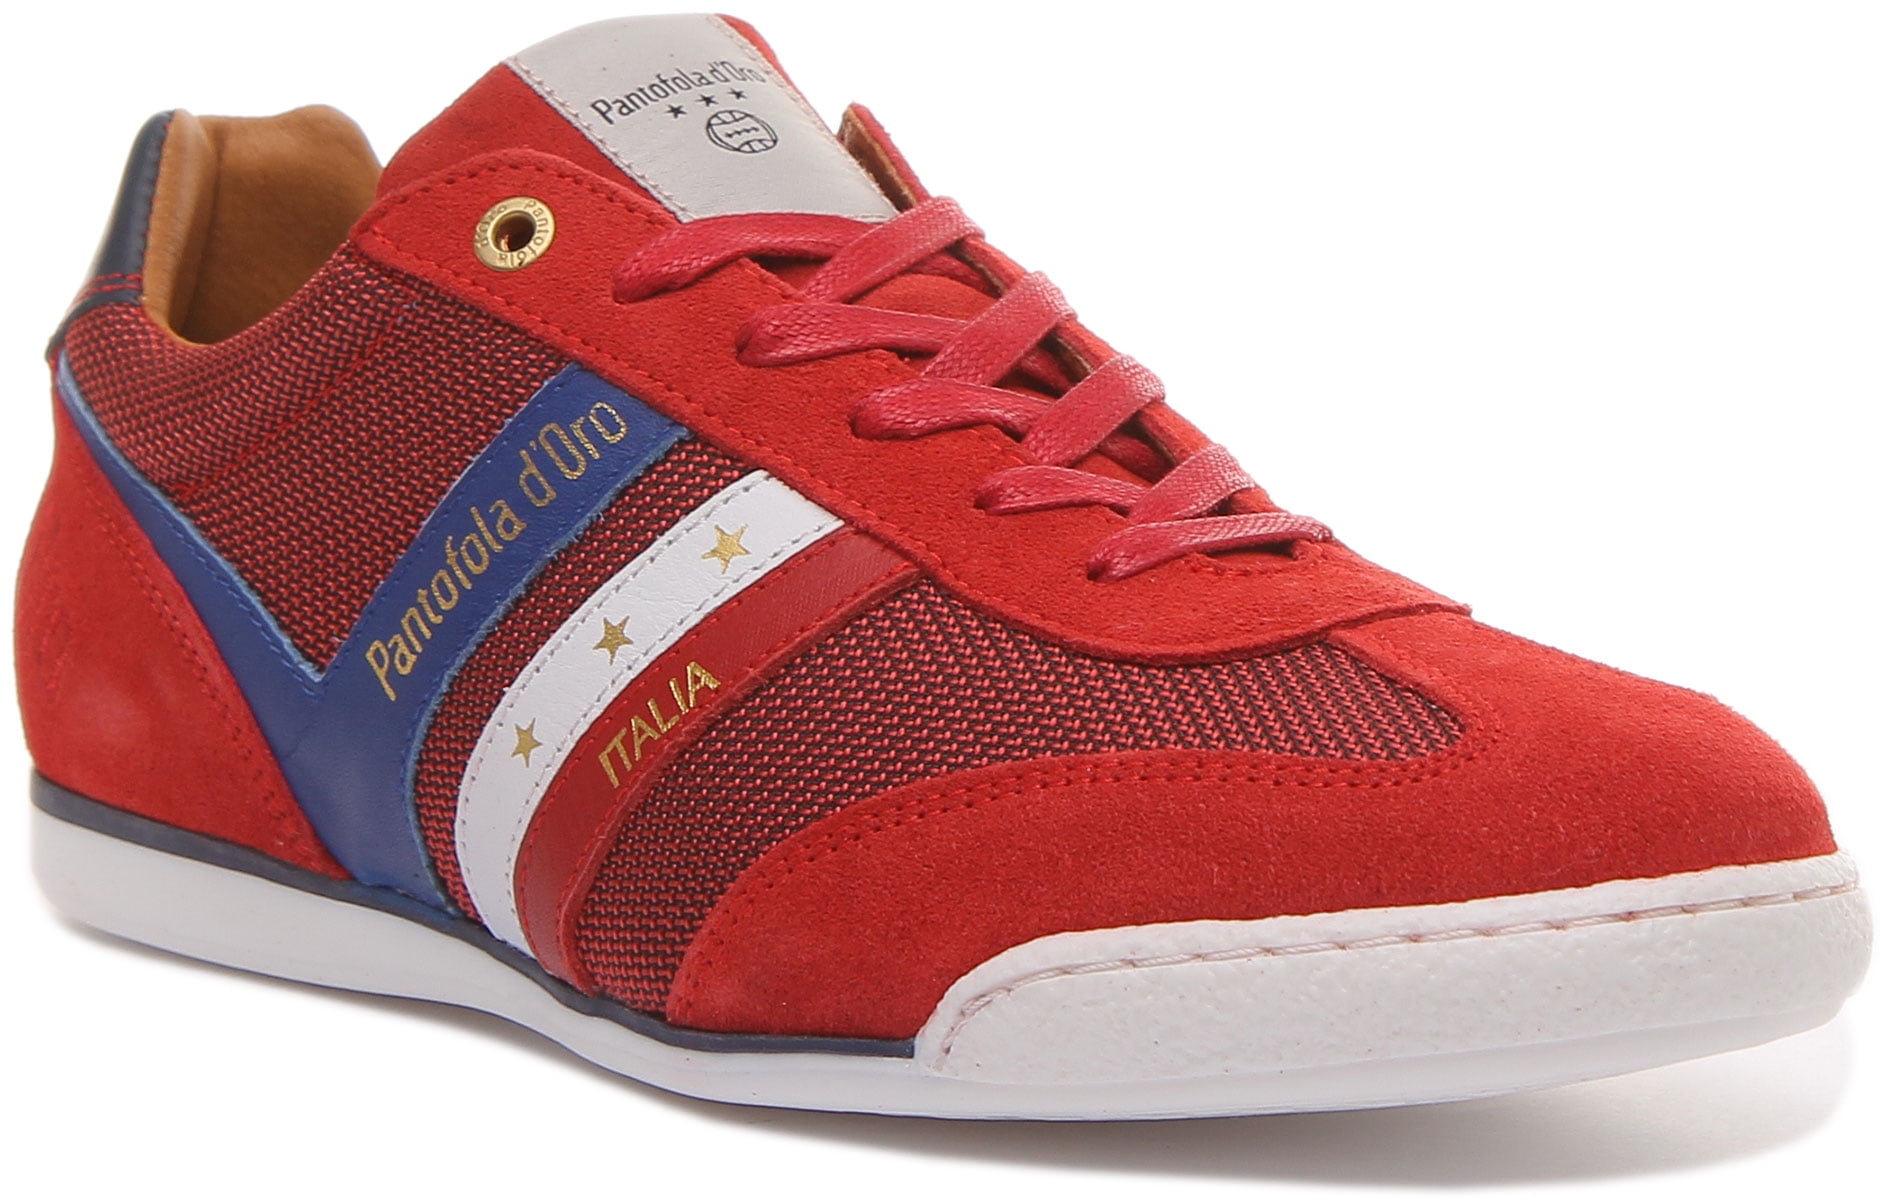 klink Verzakking Bewolkt Pantofola D'Oro Vasto Uomo Men's Low Top Lace Up Casual Sneakers In Red  Size 9 - Walmart.com